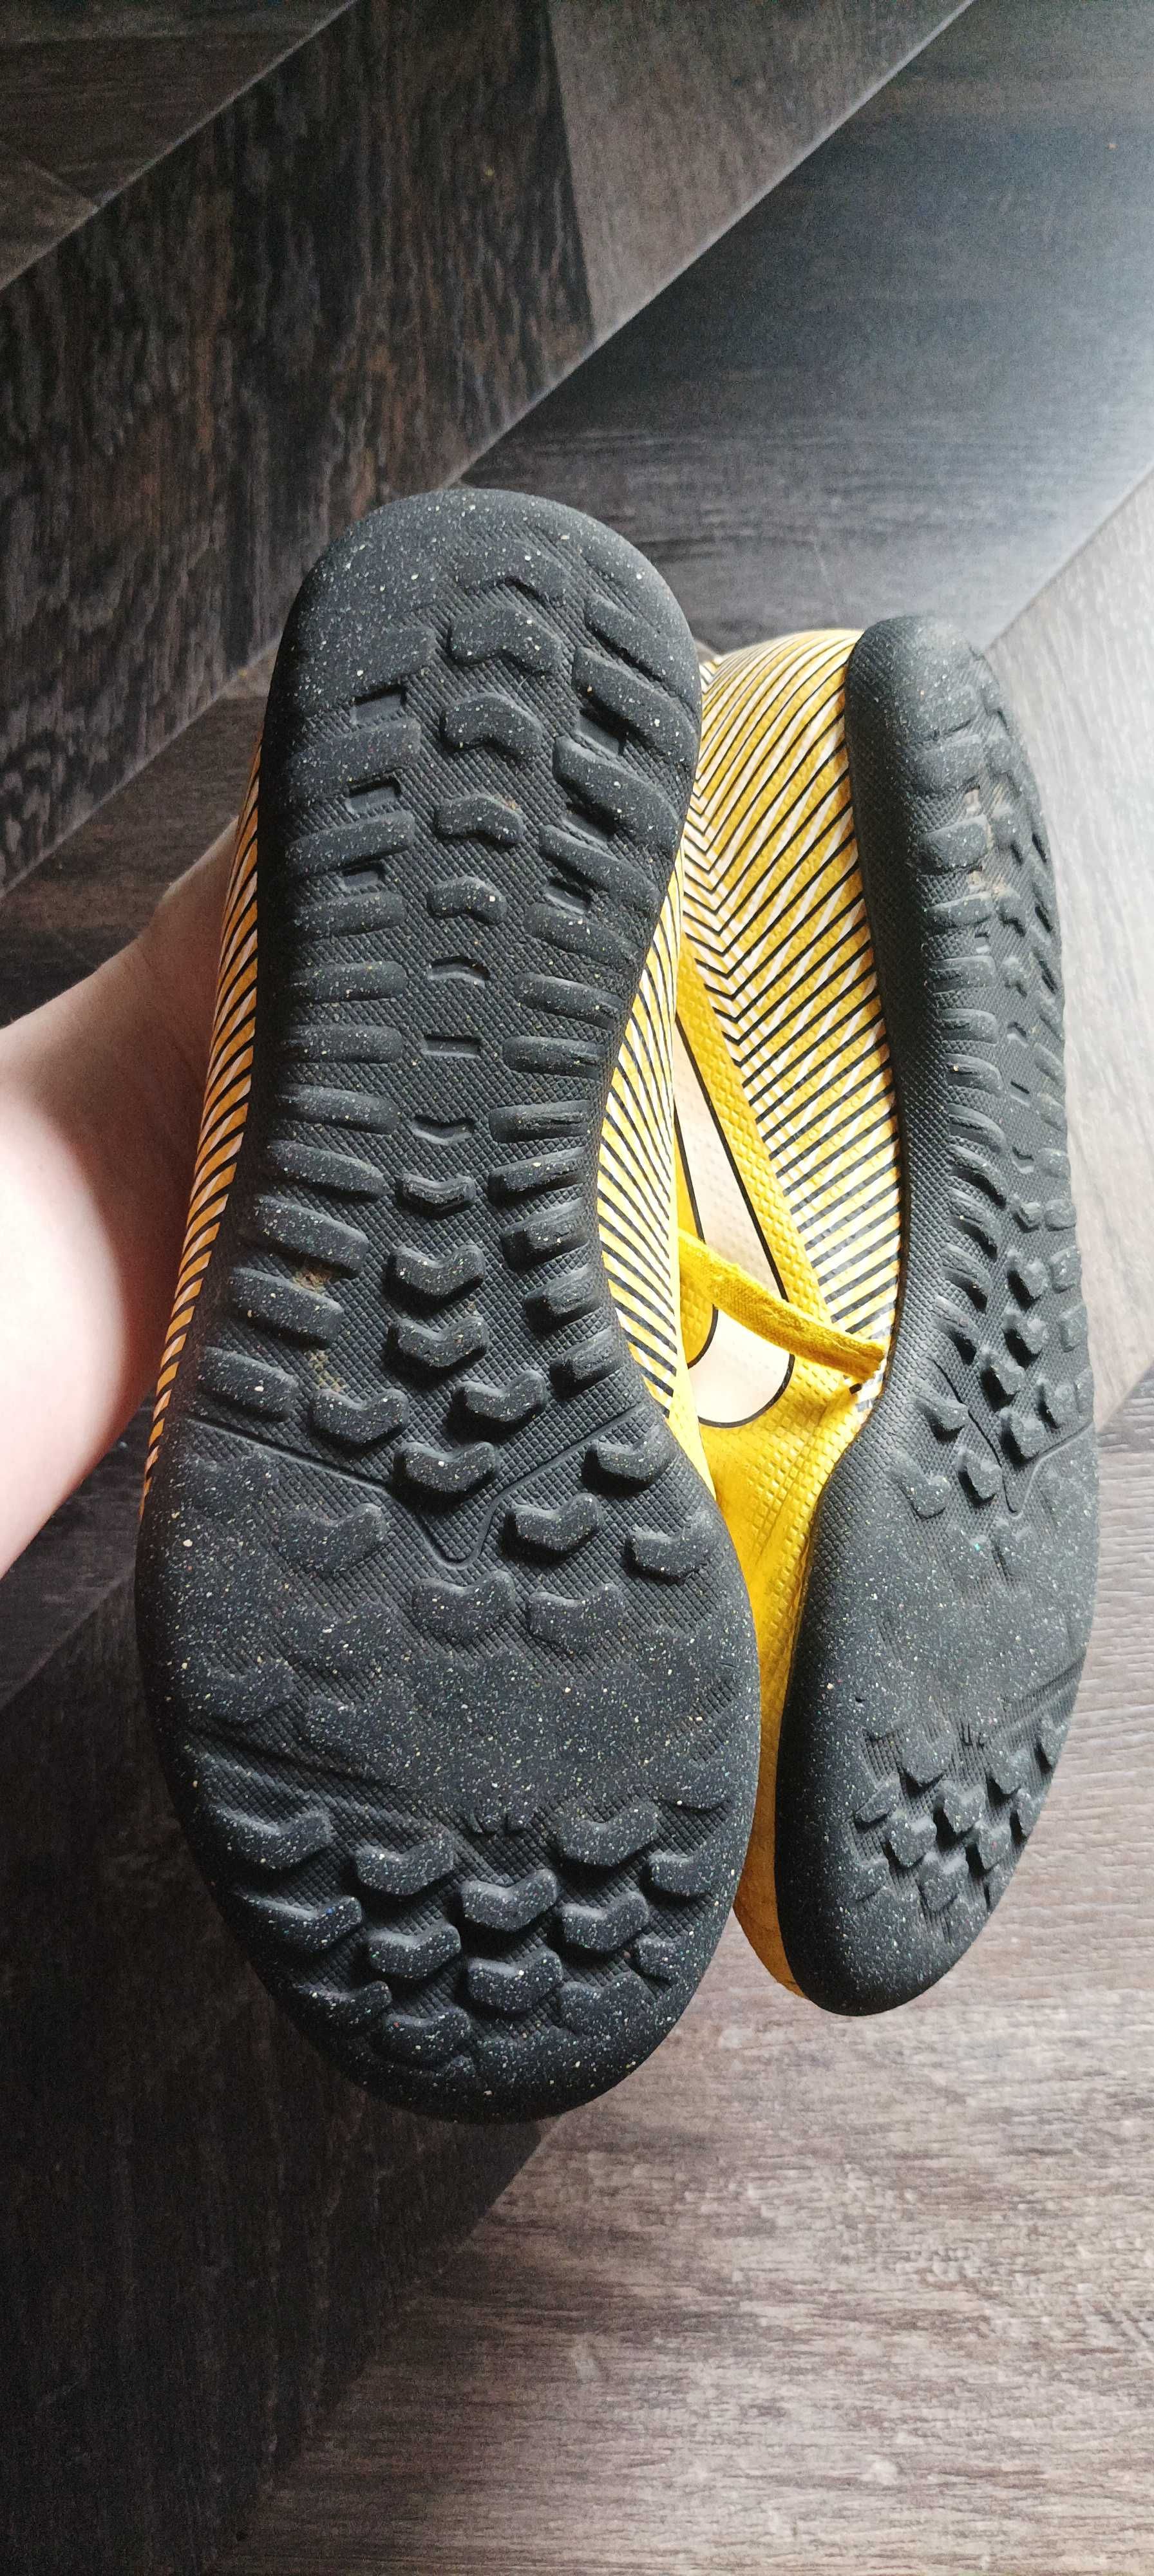 Buty Nike do piłki długość 24 cm